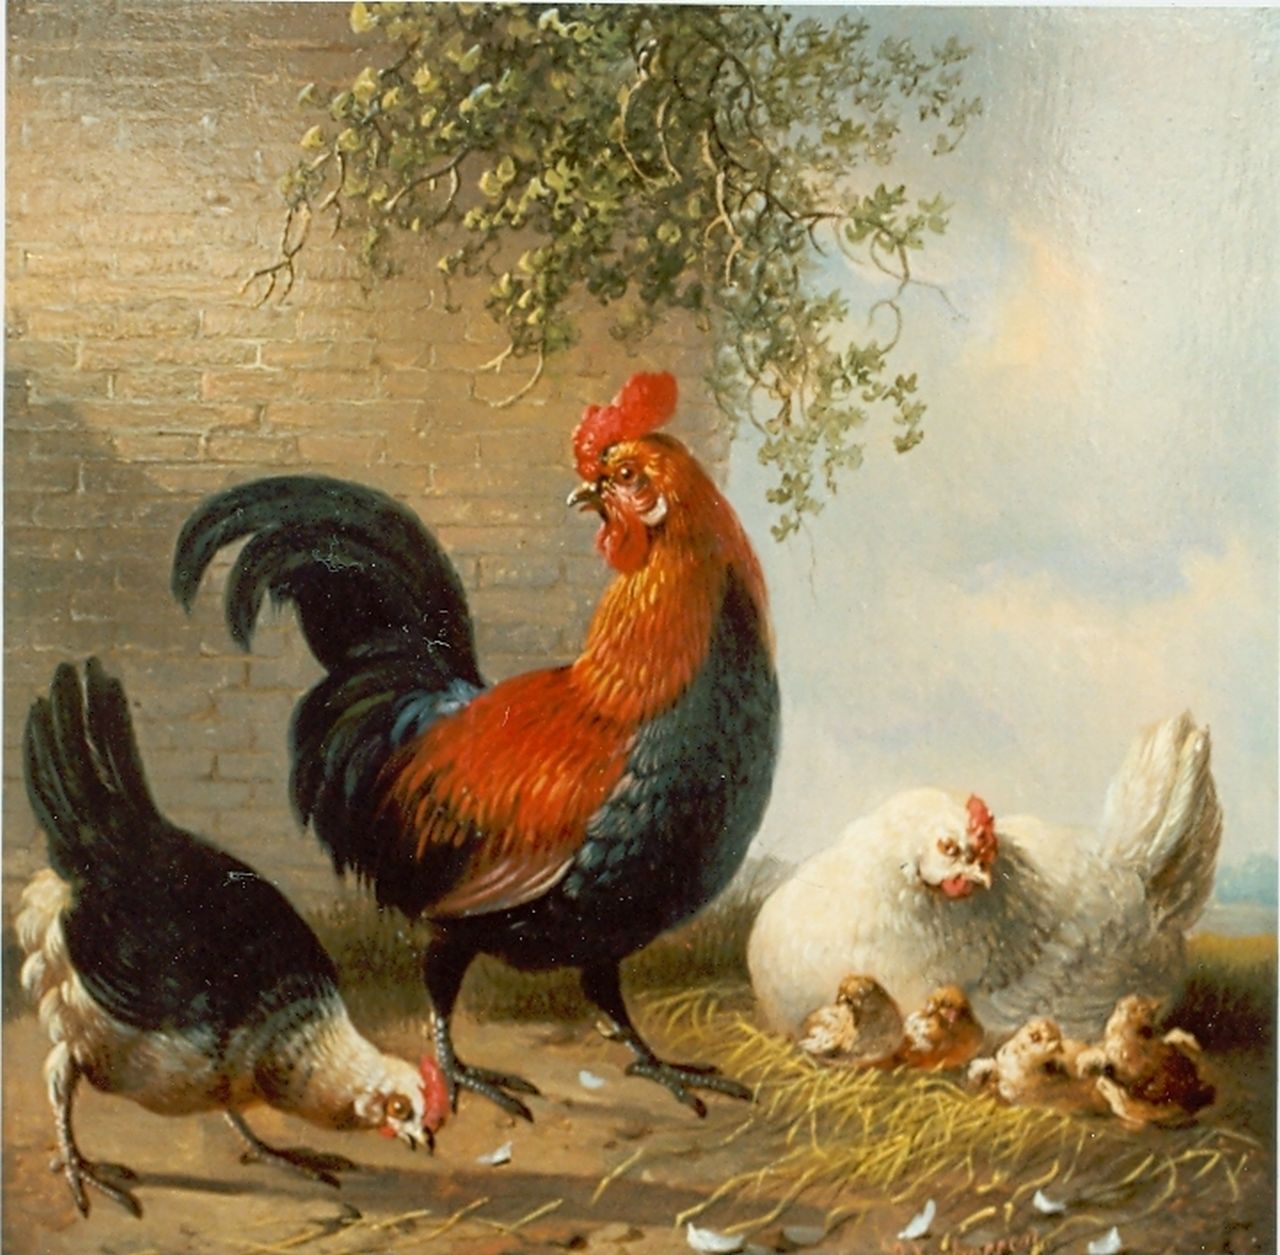 Verhoesen A.  | Albertus Verhoesen, Haan en kip met kuikens op een erf, olieverf op paneel 16,5 x 16,5 cm, gesigneerd rechtsonder en gedateerd 1858